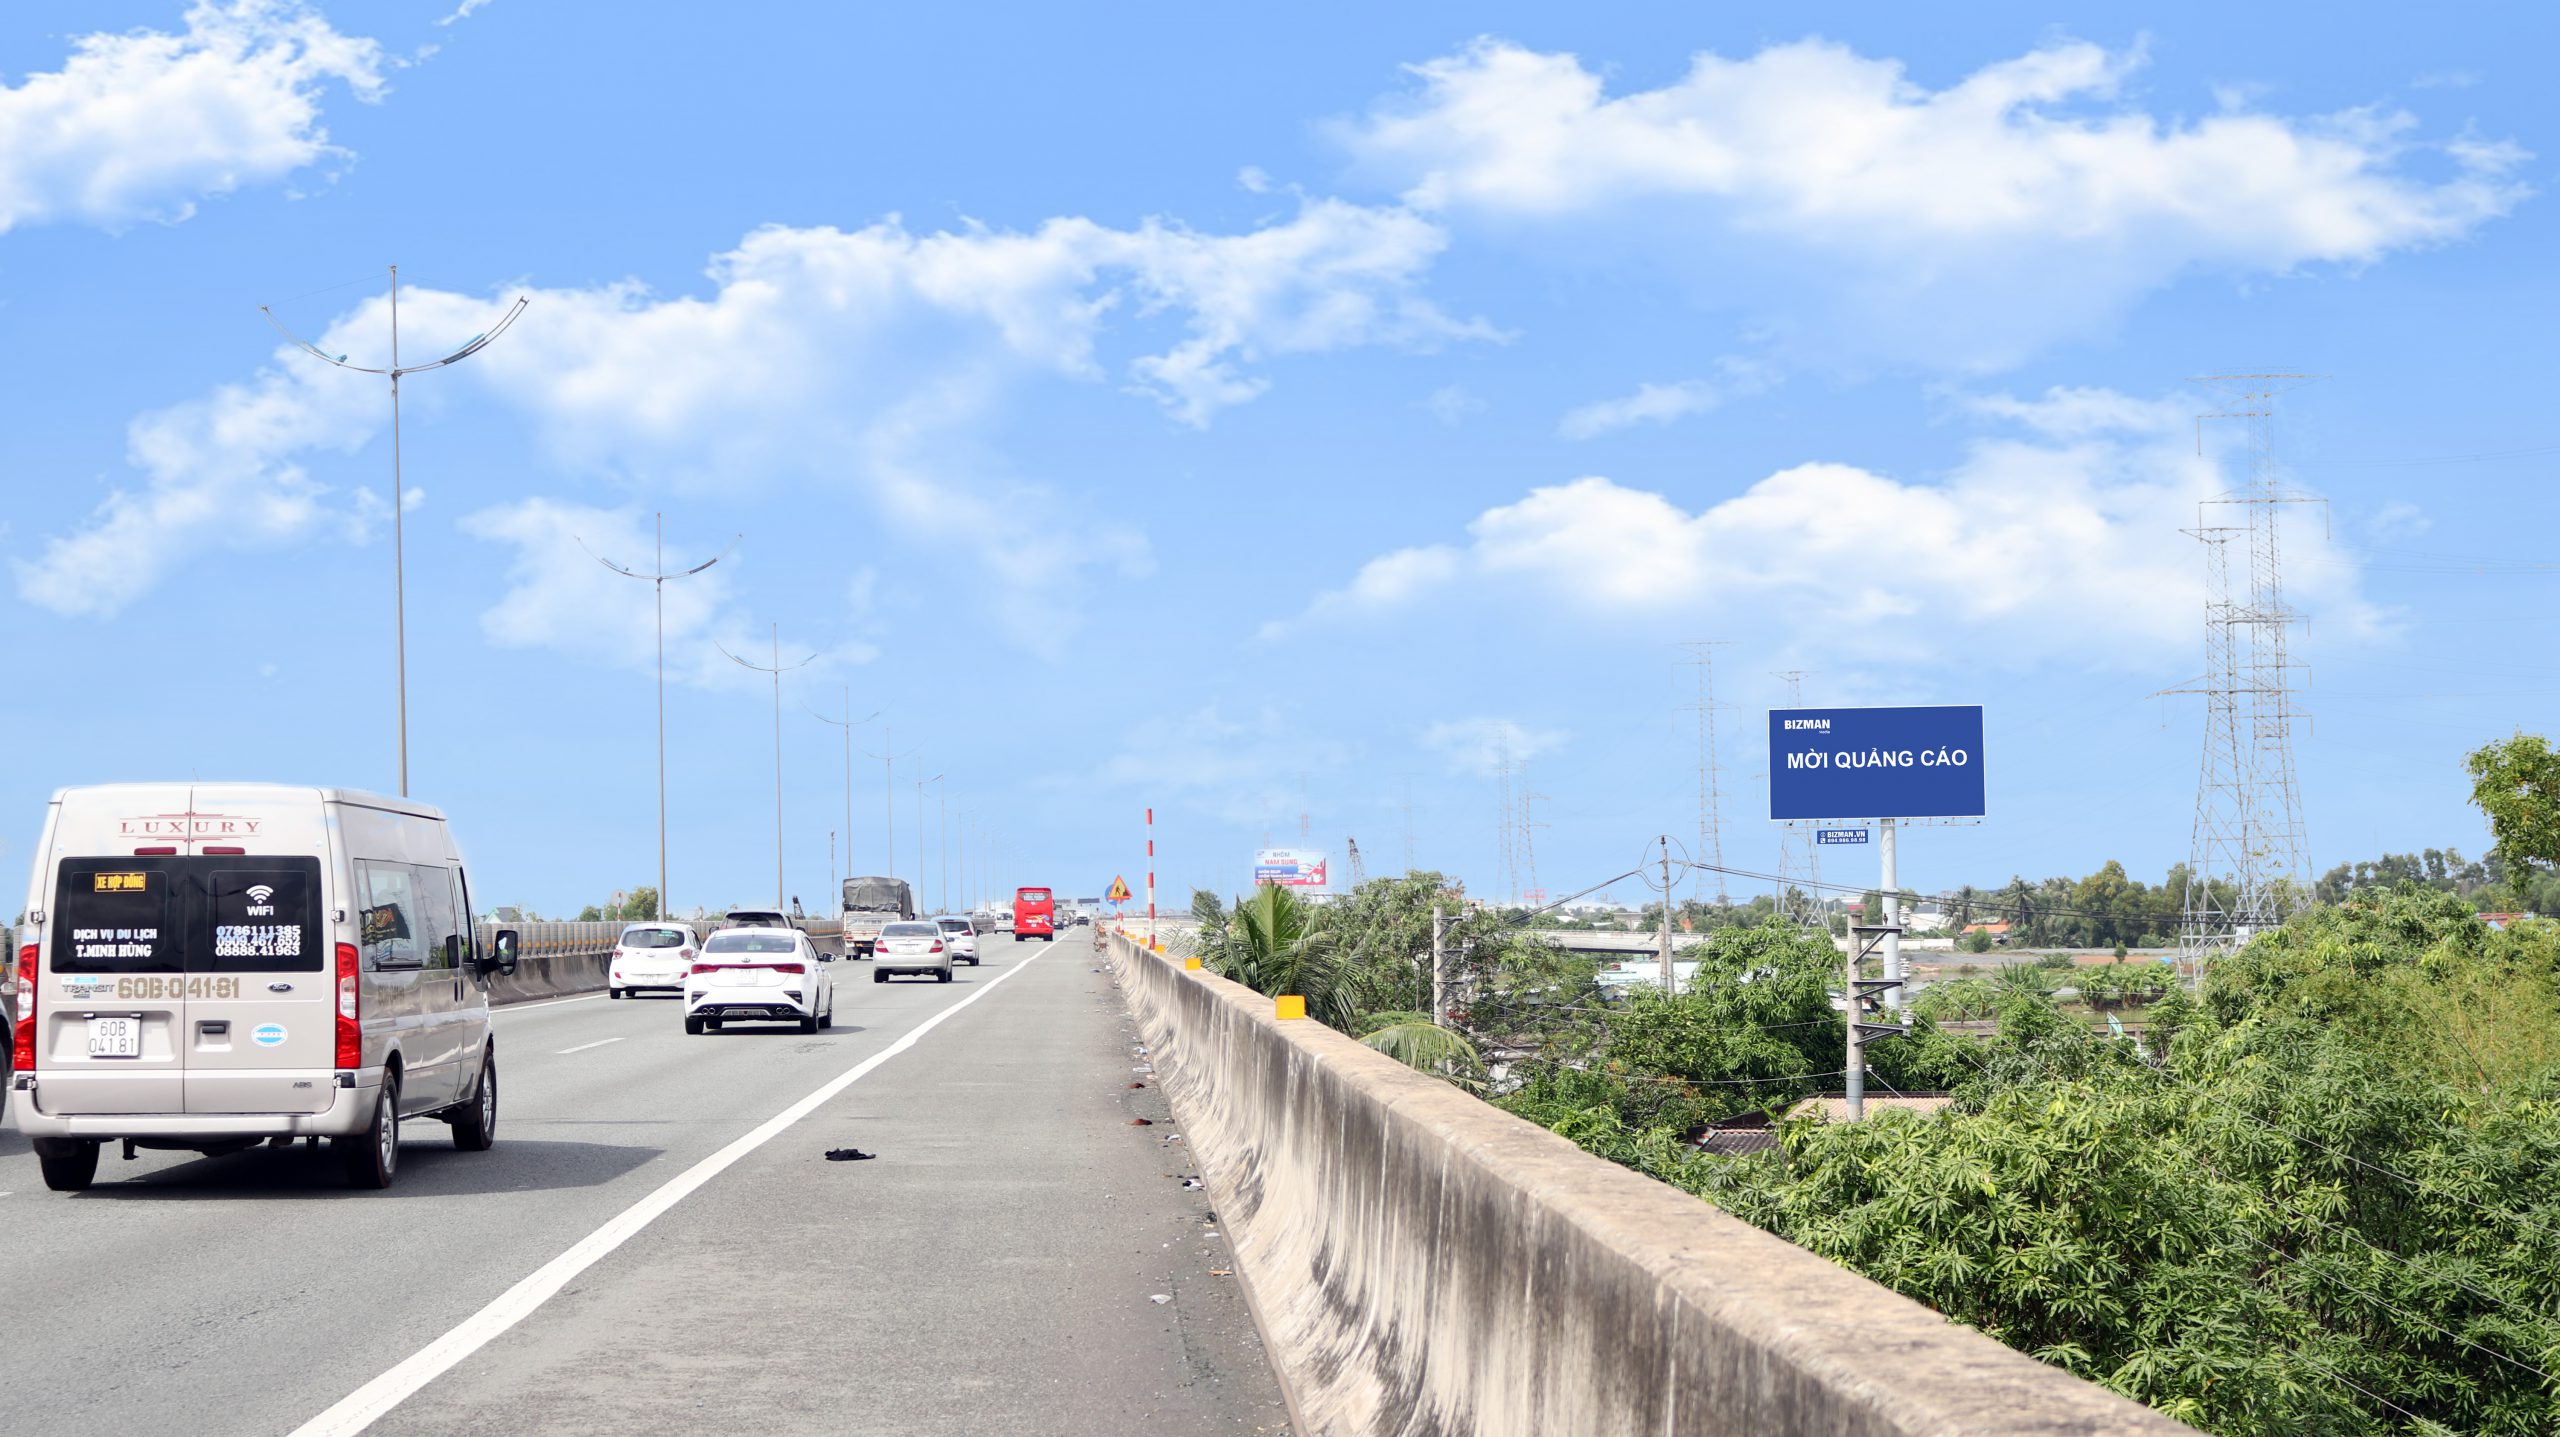 Bảng quảng cáo cao tốc Sài Gòn - Trung Lương - 12+615